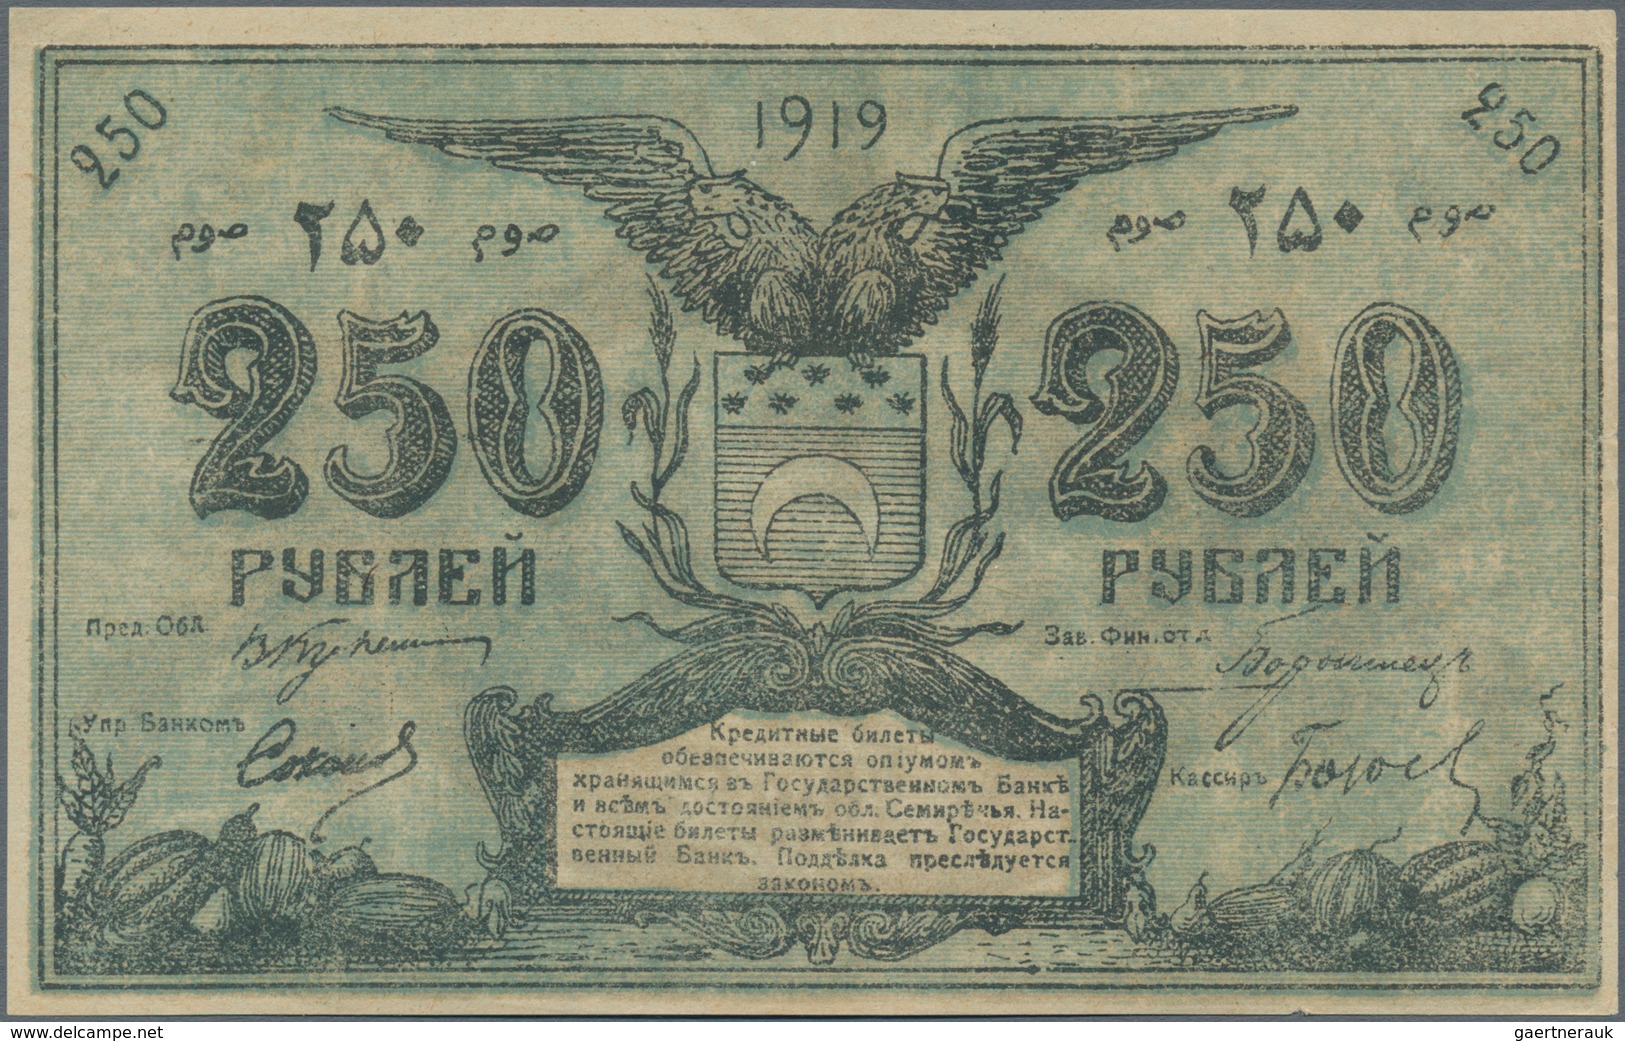 Russia / Russland: Central Asia - Semireche Region 250 Rubles 1919, P.S1132b (R. 20617, K. 19d), Con - Russland